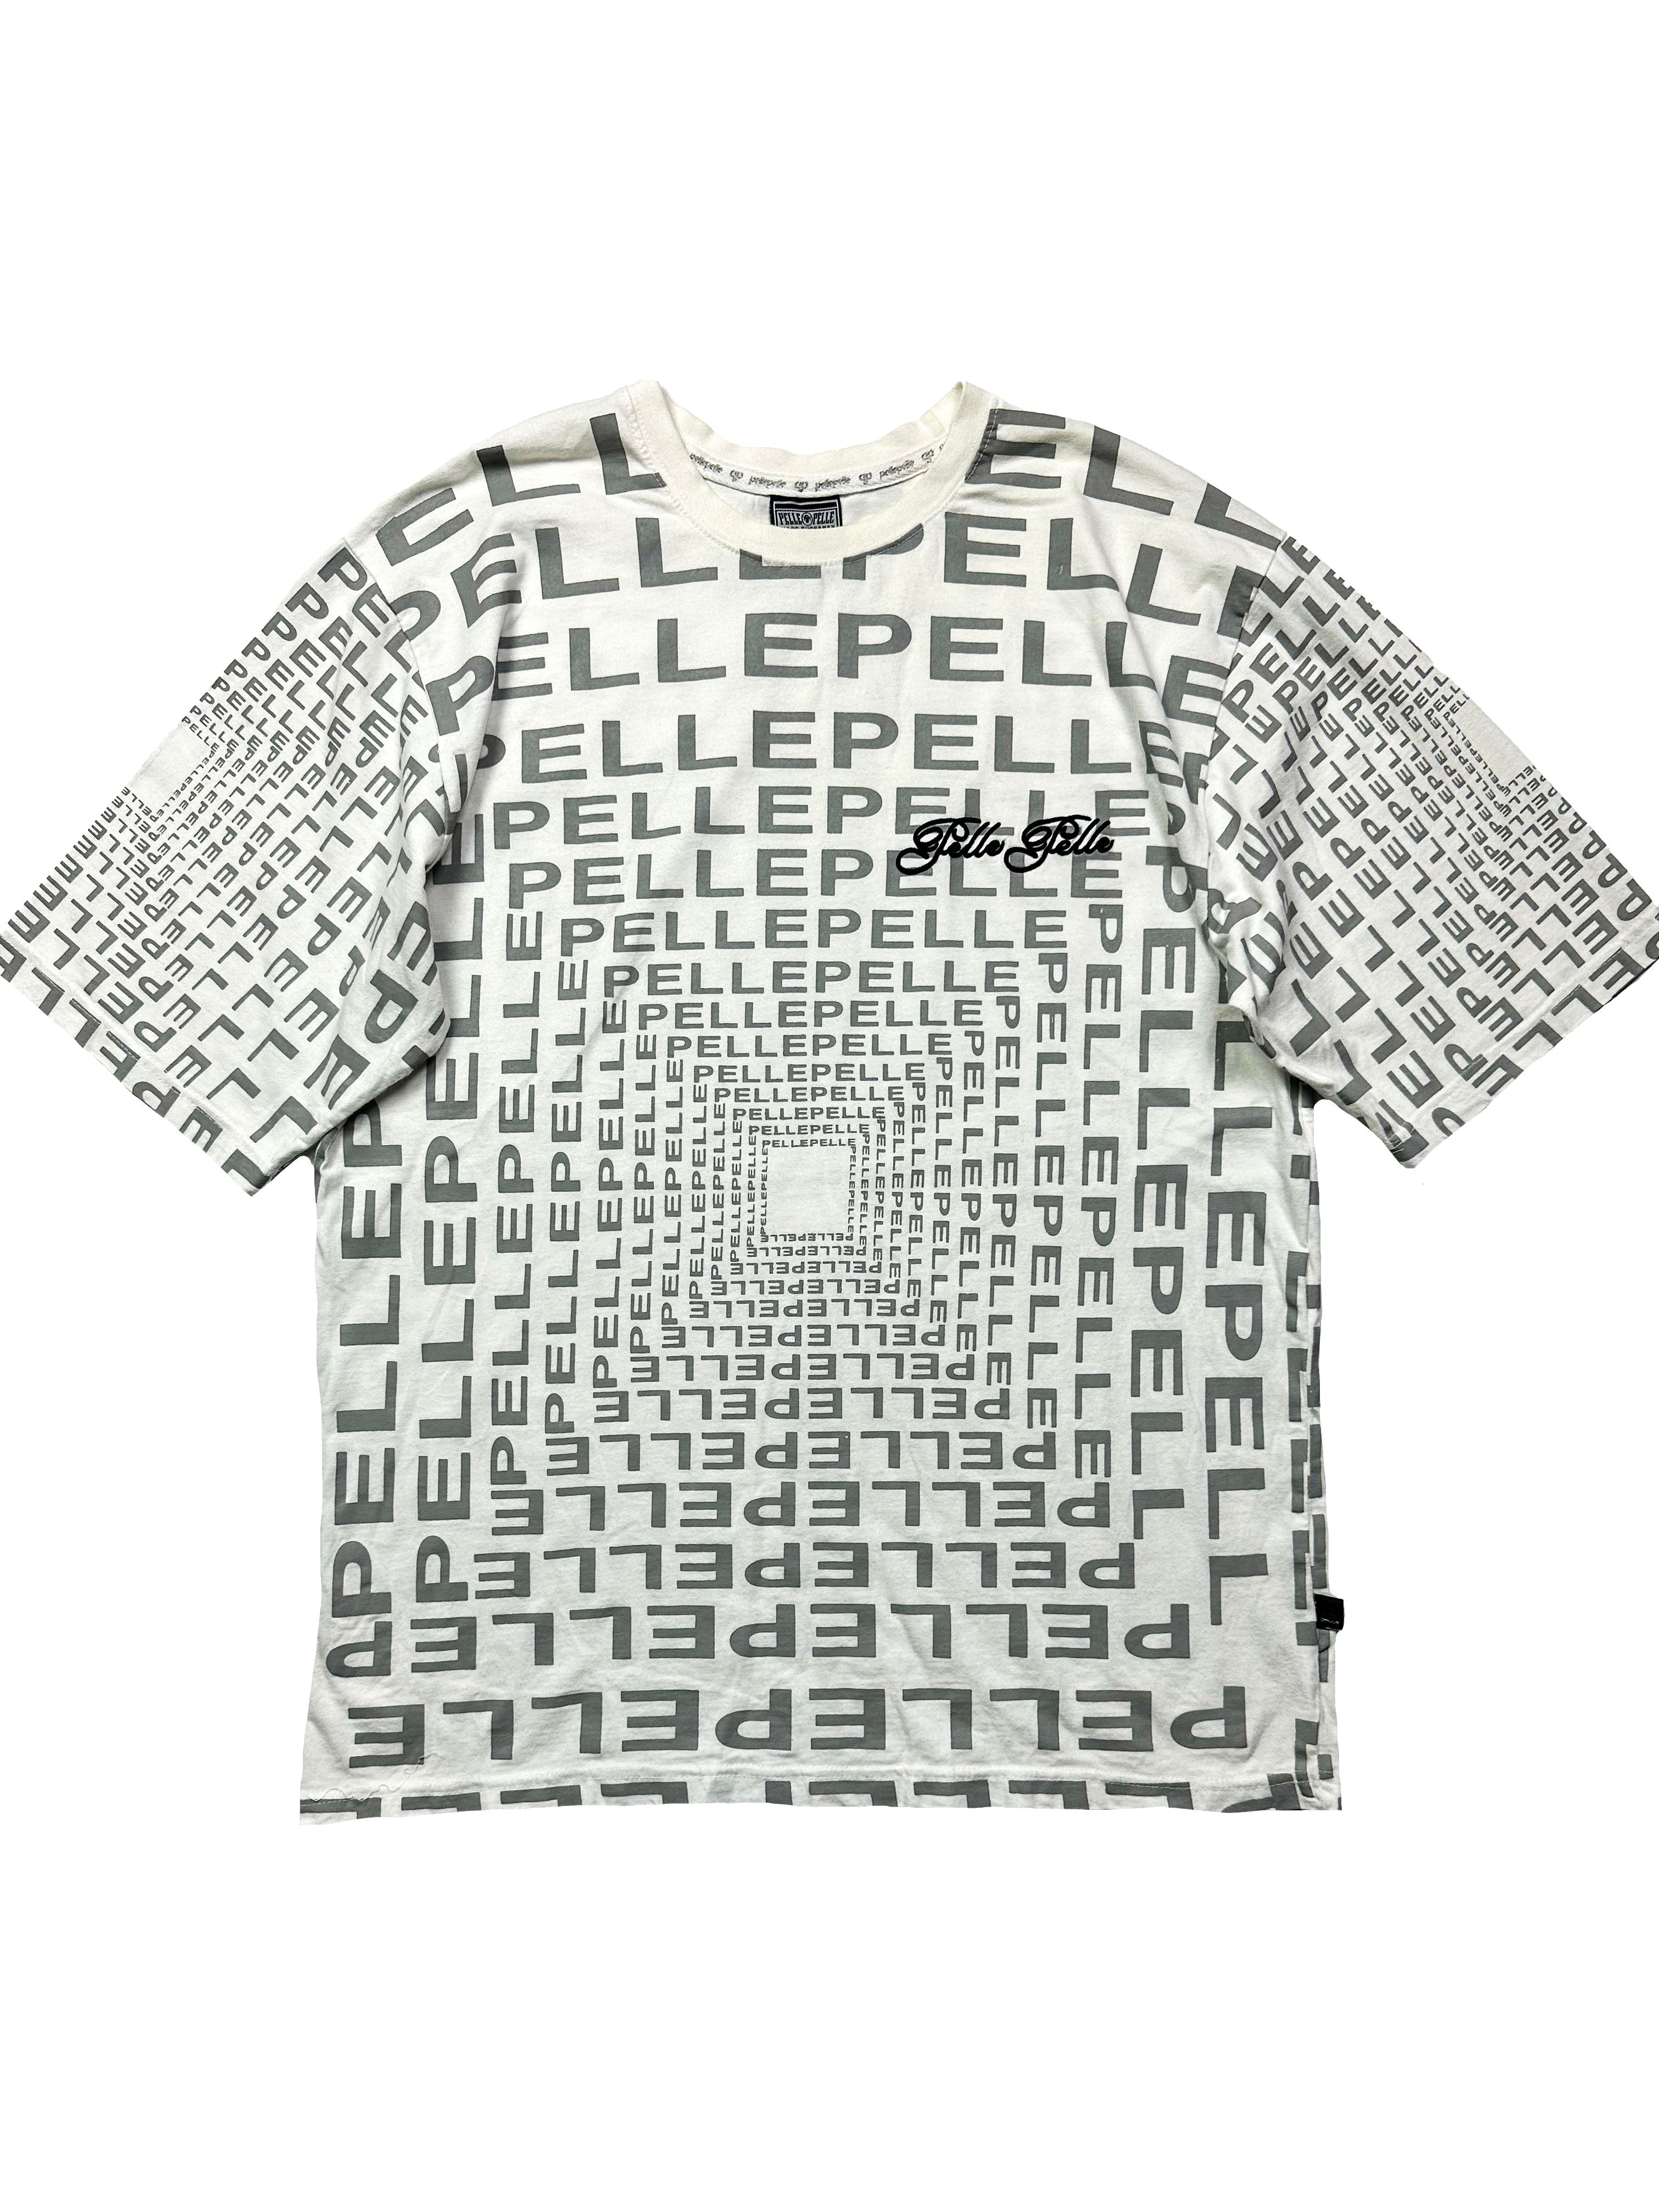 Pelle Pelle White Spell Out T-shirt 90's